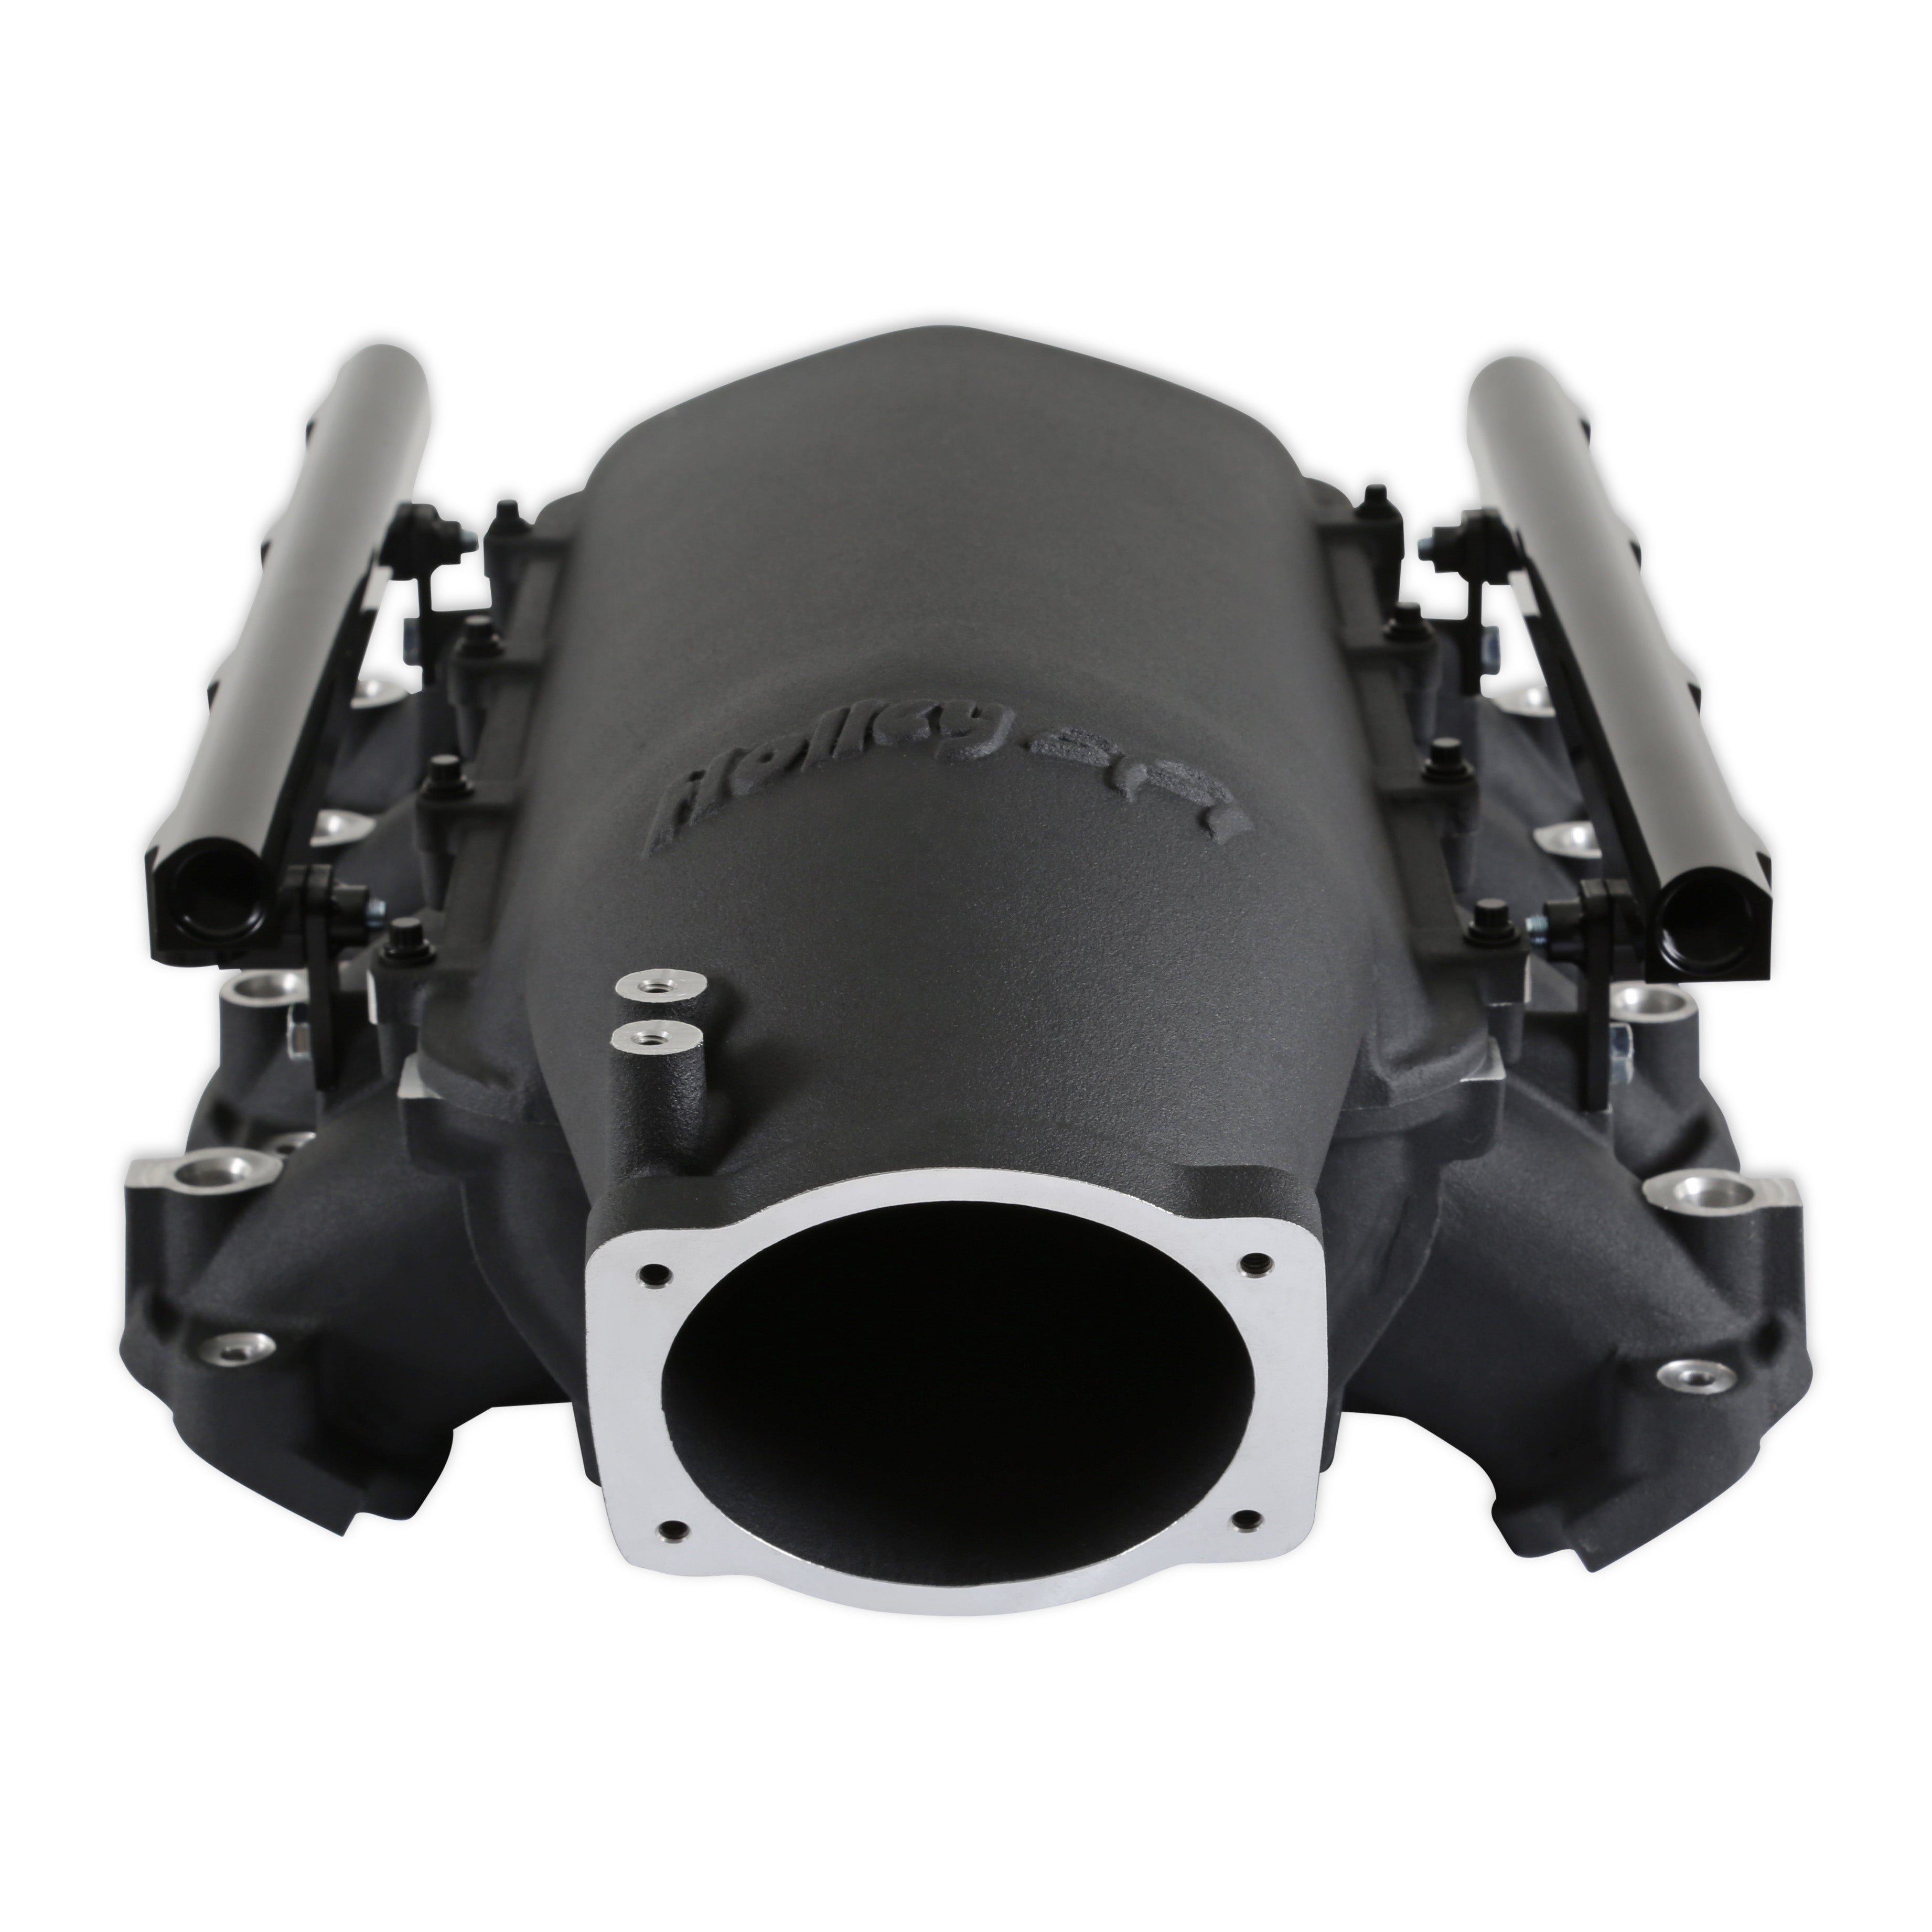 Holley EFI Engine Intake Manifold Kit 300-718BK